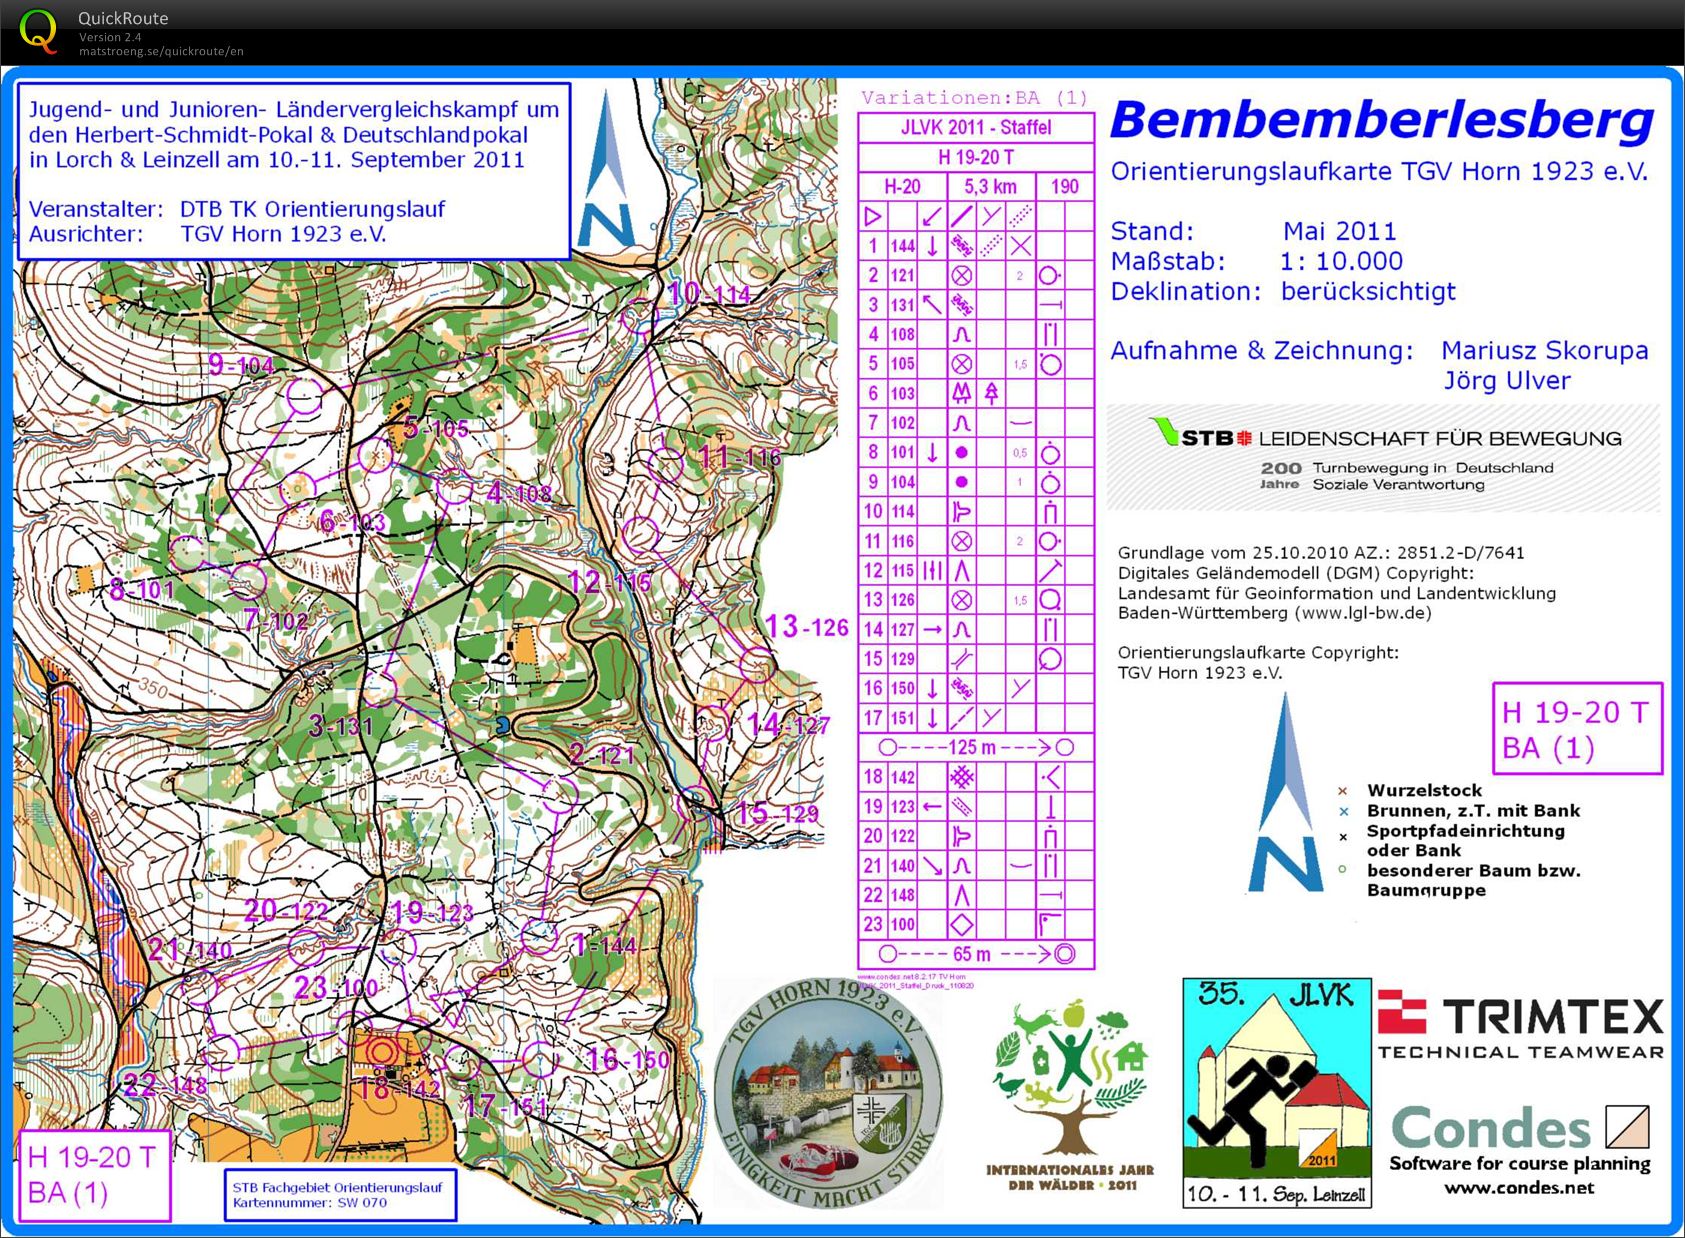 Training Bemberlesberg (2011 JLVK-Relay) (01-04-2012)